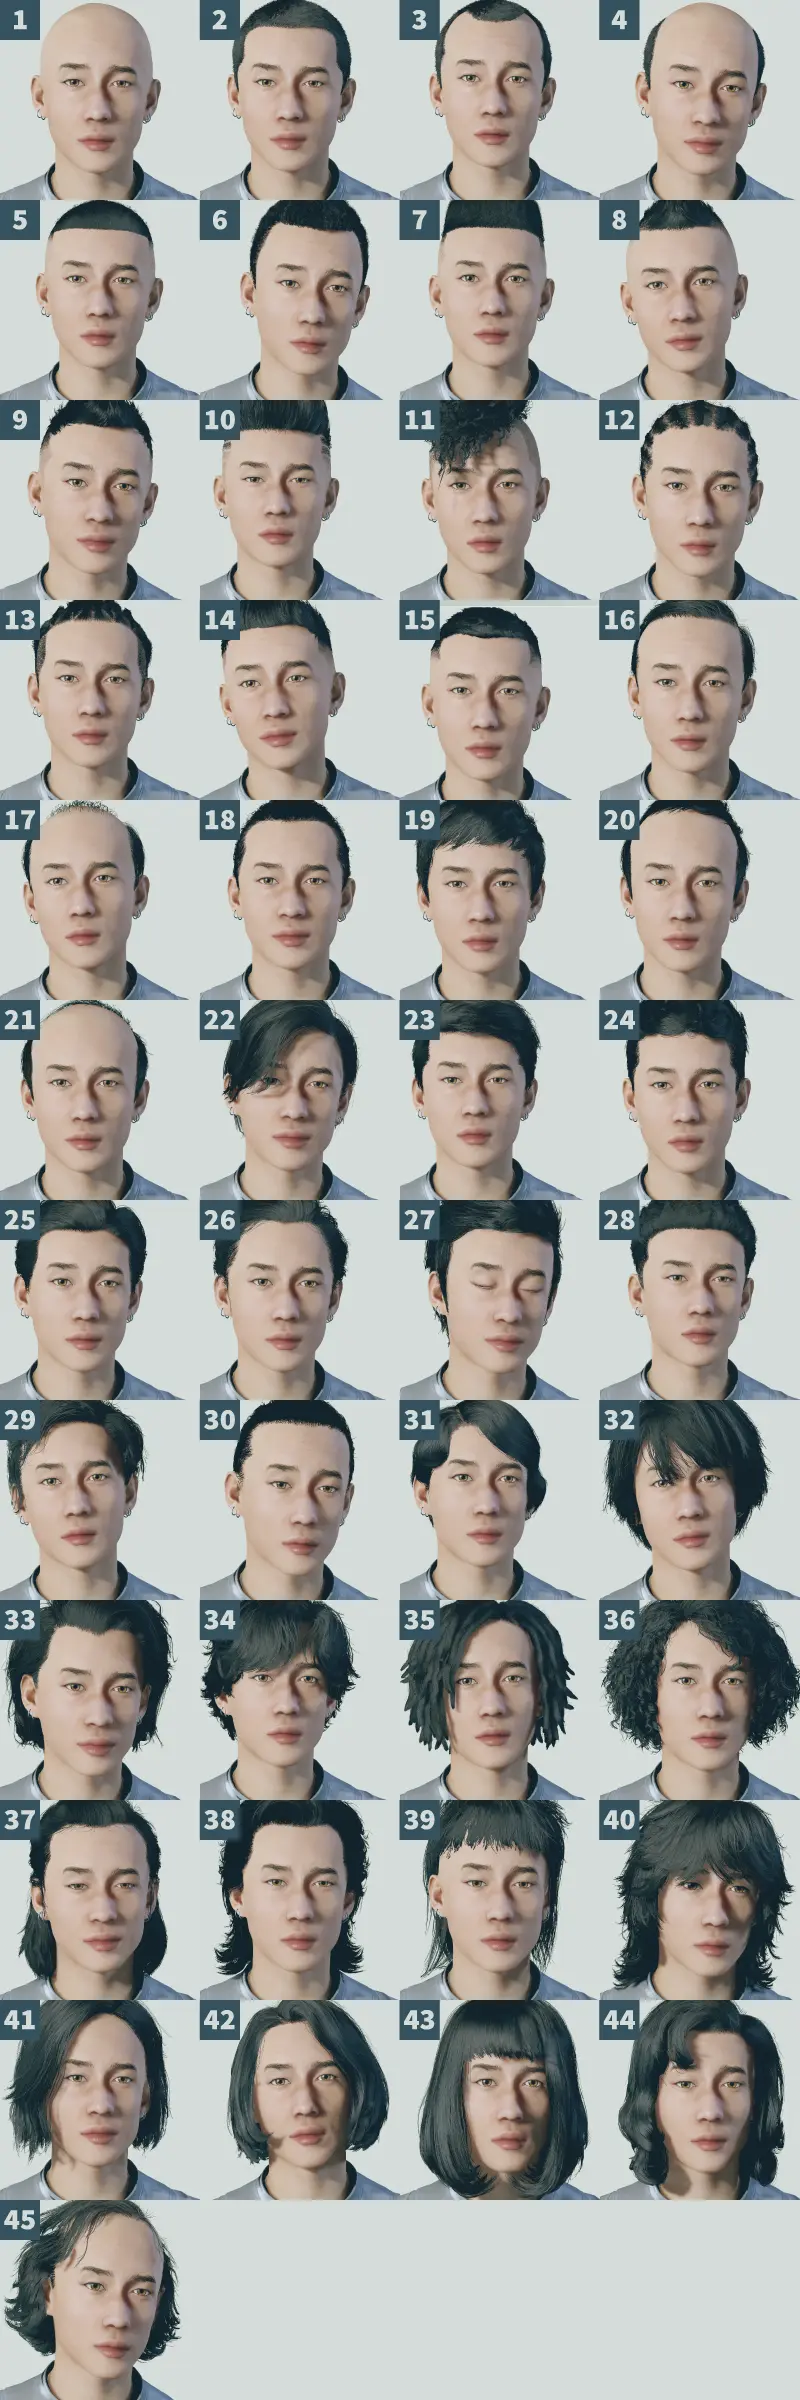 スターフィールドのキャラメイク画面で、髪型と呼ばれる男性の髪の形や色を45種類選択できる部分のスクリーンショット